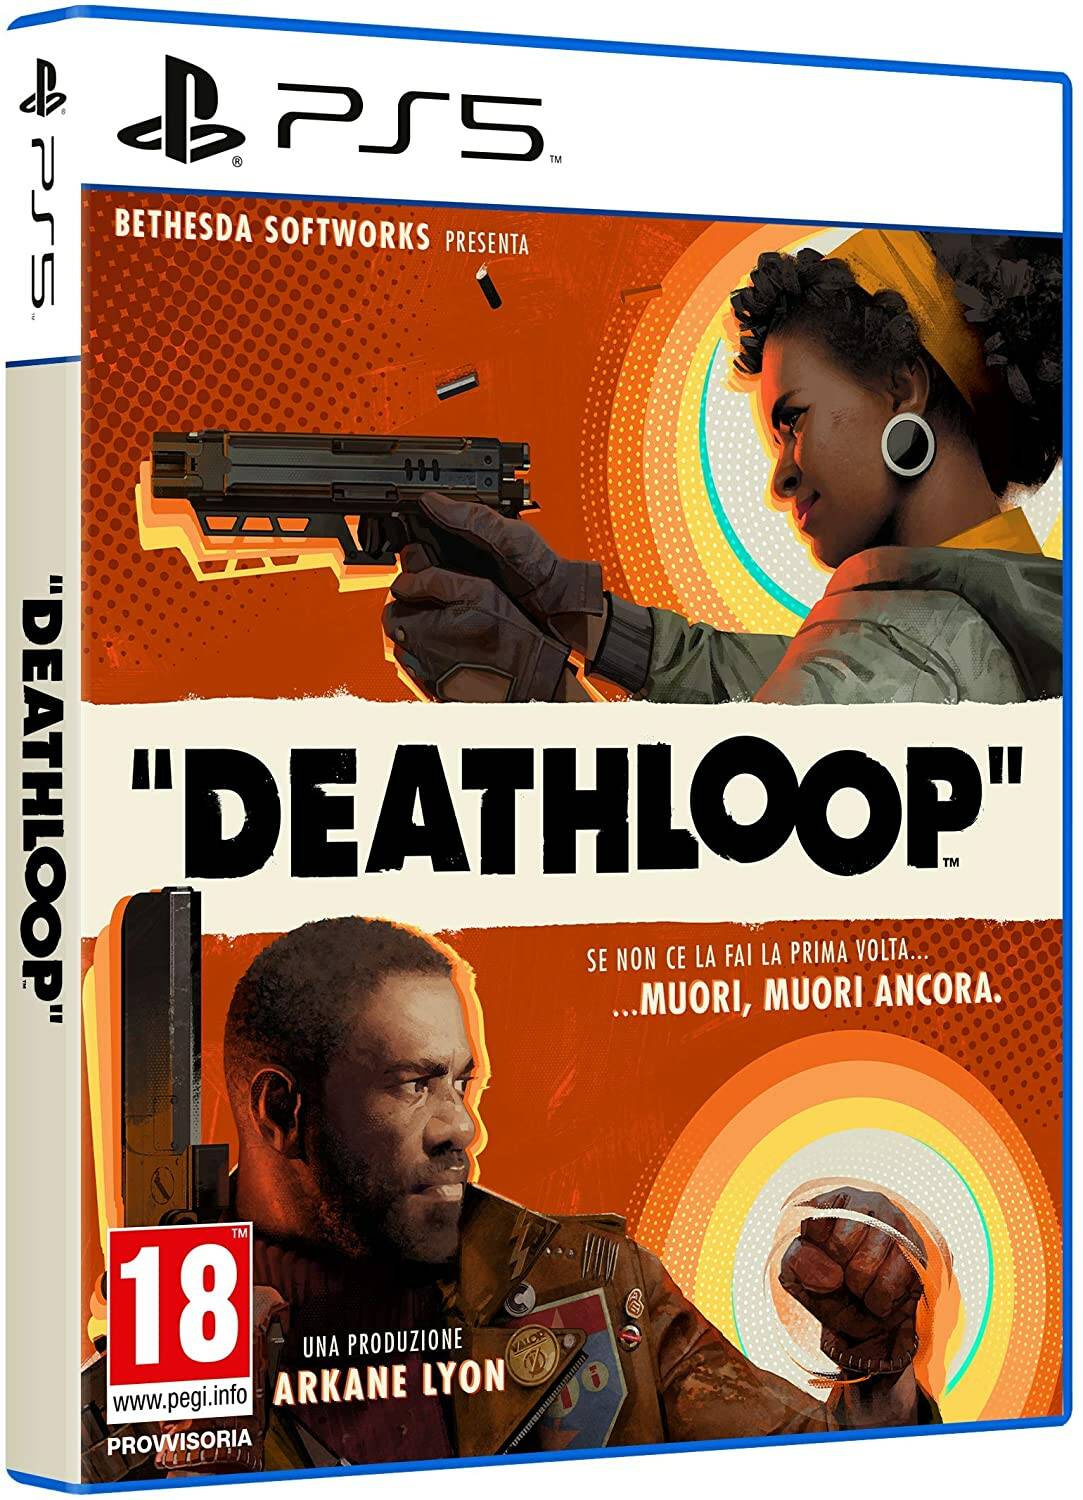 Edición estándar de Deathloop